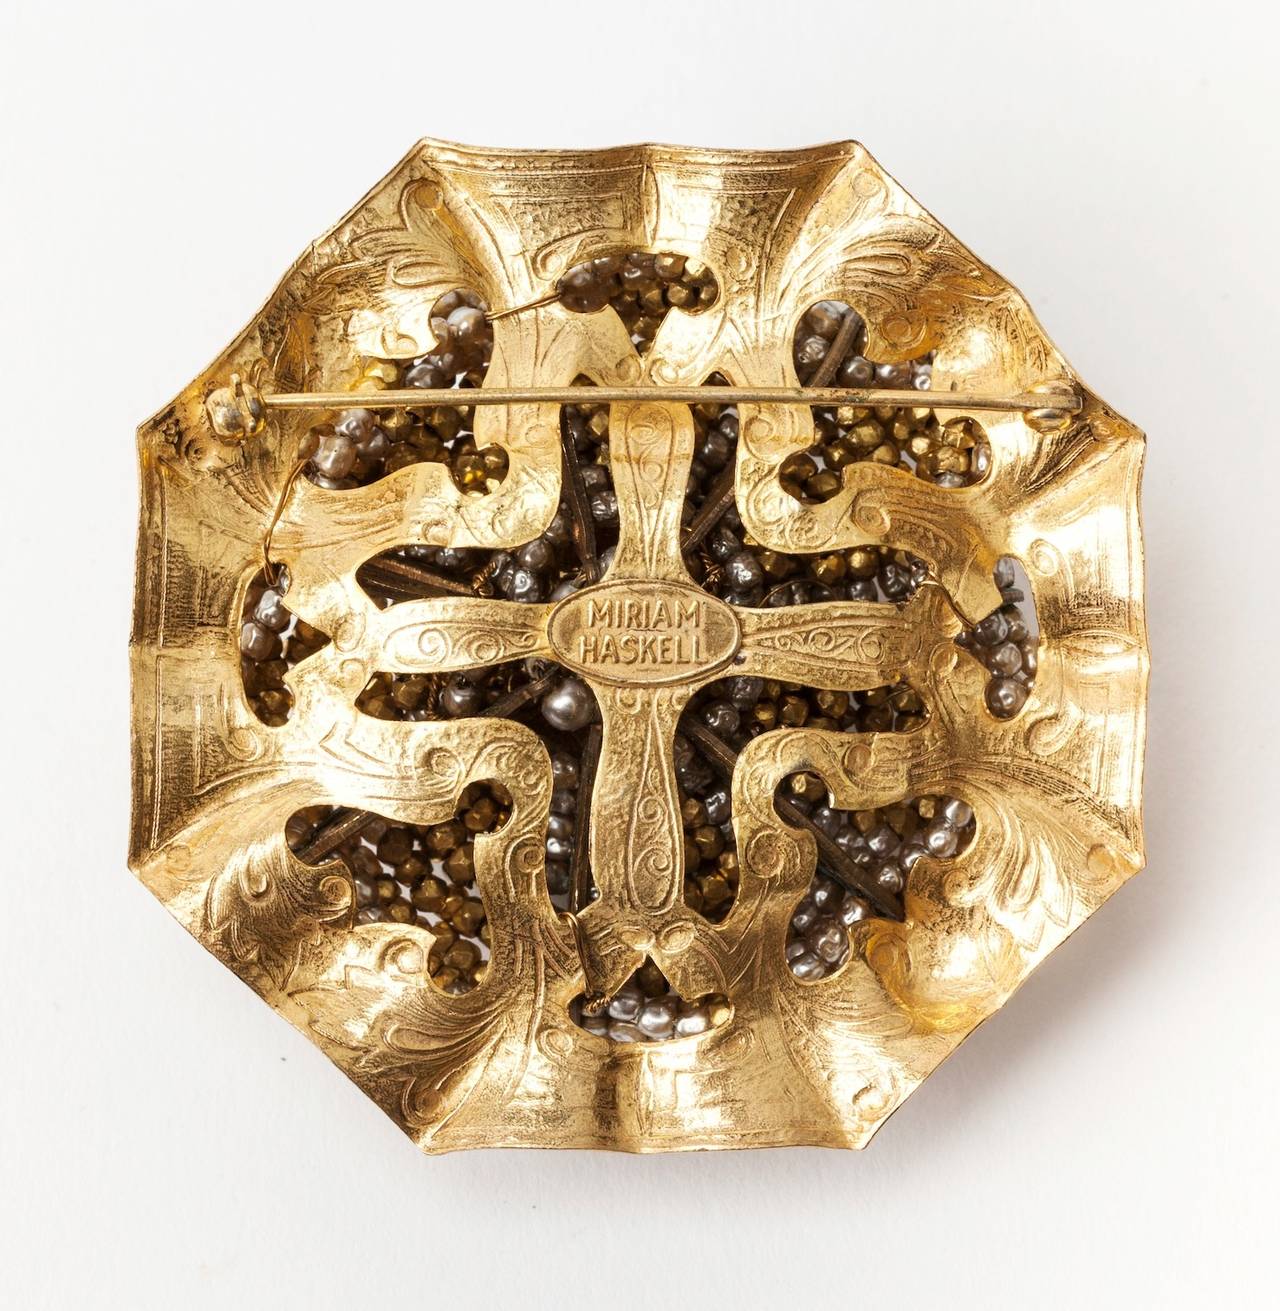 Grande broche ronde de Miriam Steele en vermeil russe, avec une fausse perle baroque ronde au centre, cousue d'une large bordure de perles d'acier taillées et facettées en argent et en vermeil. Années 1950, États-Unis.